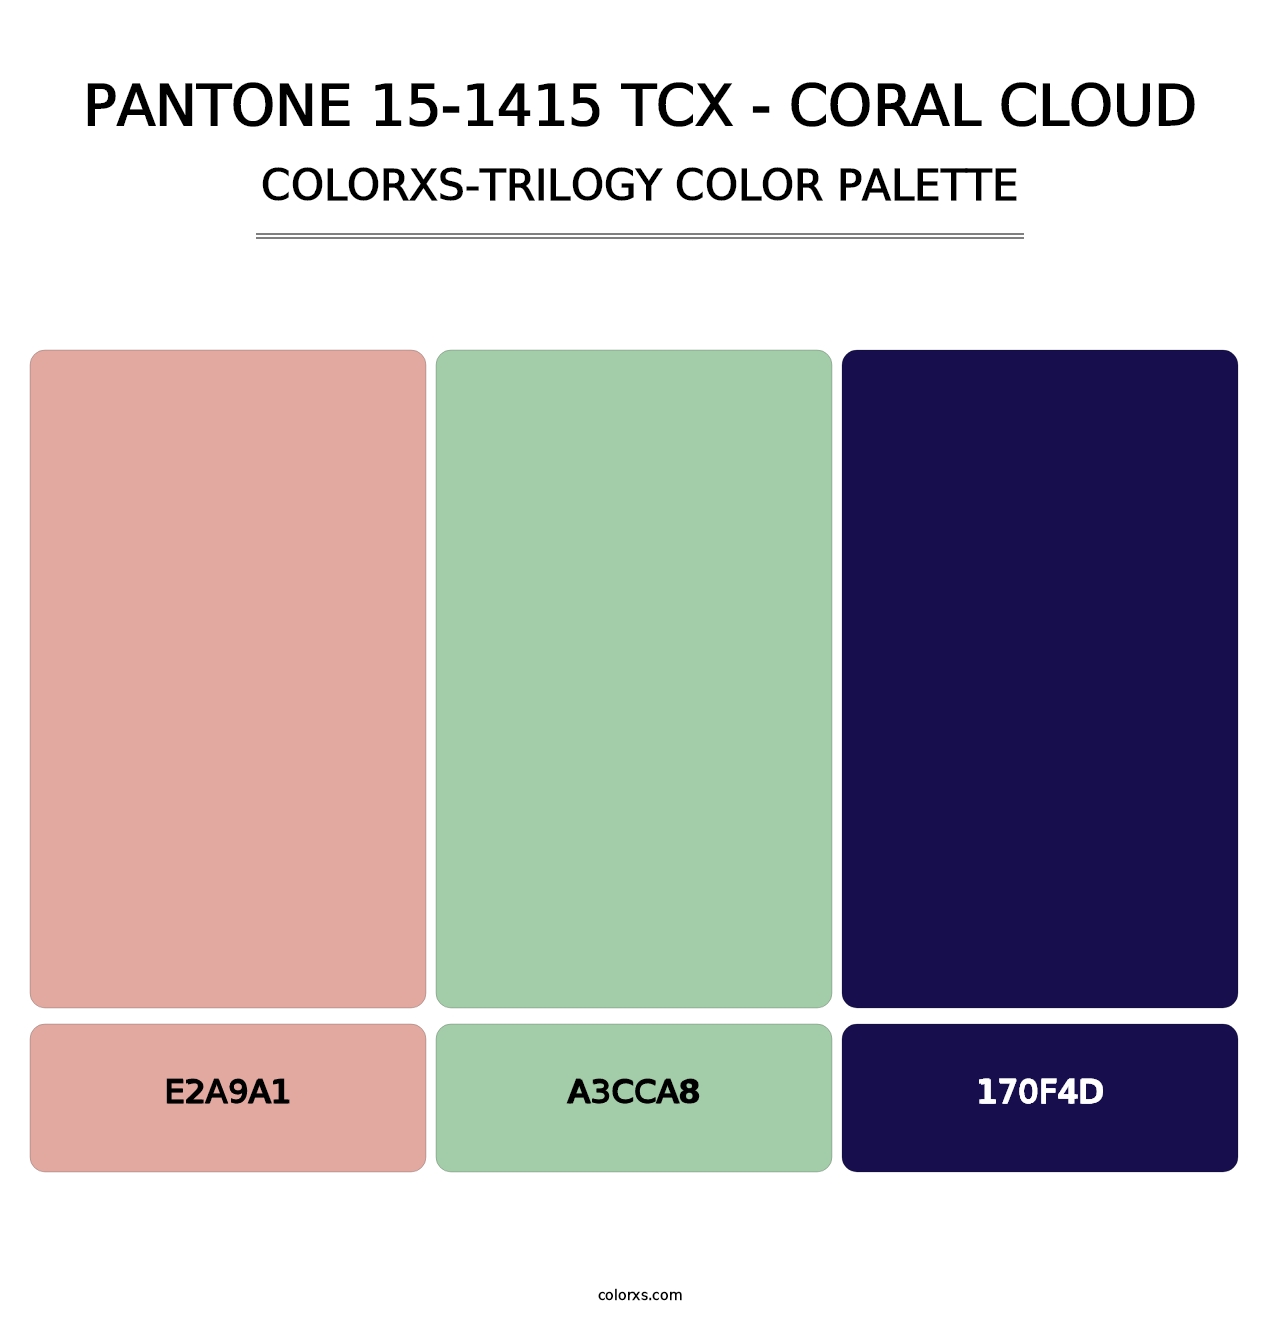 PANTONE 15-1415 TCX - Coral Cloud - Colorxs Trilogy Palette